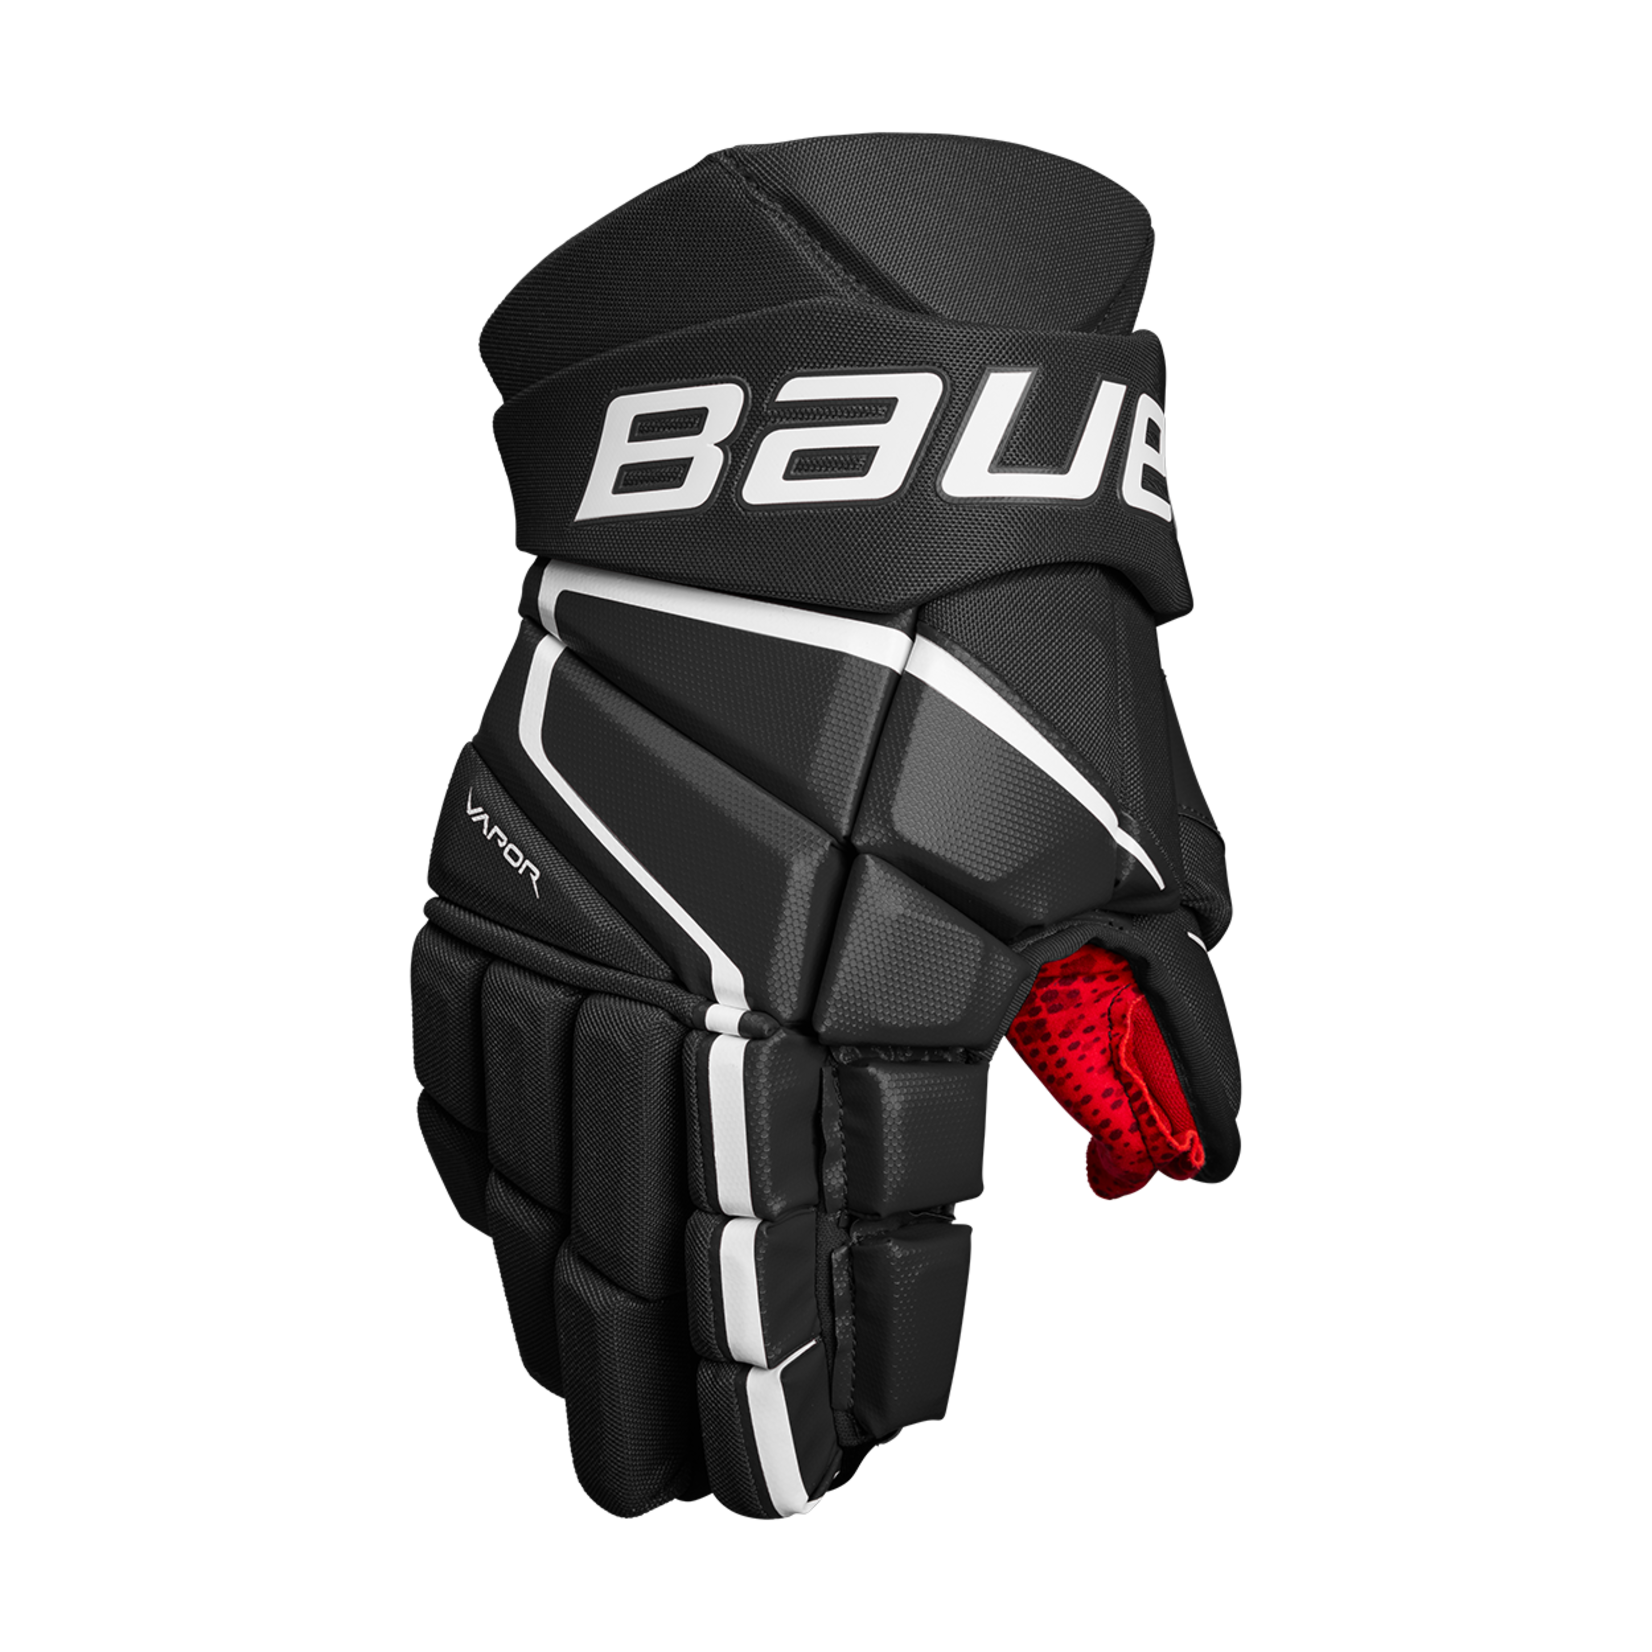 Bauer Bauer Hockey Gloves, Vapor 3X, Senior